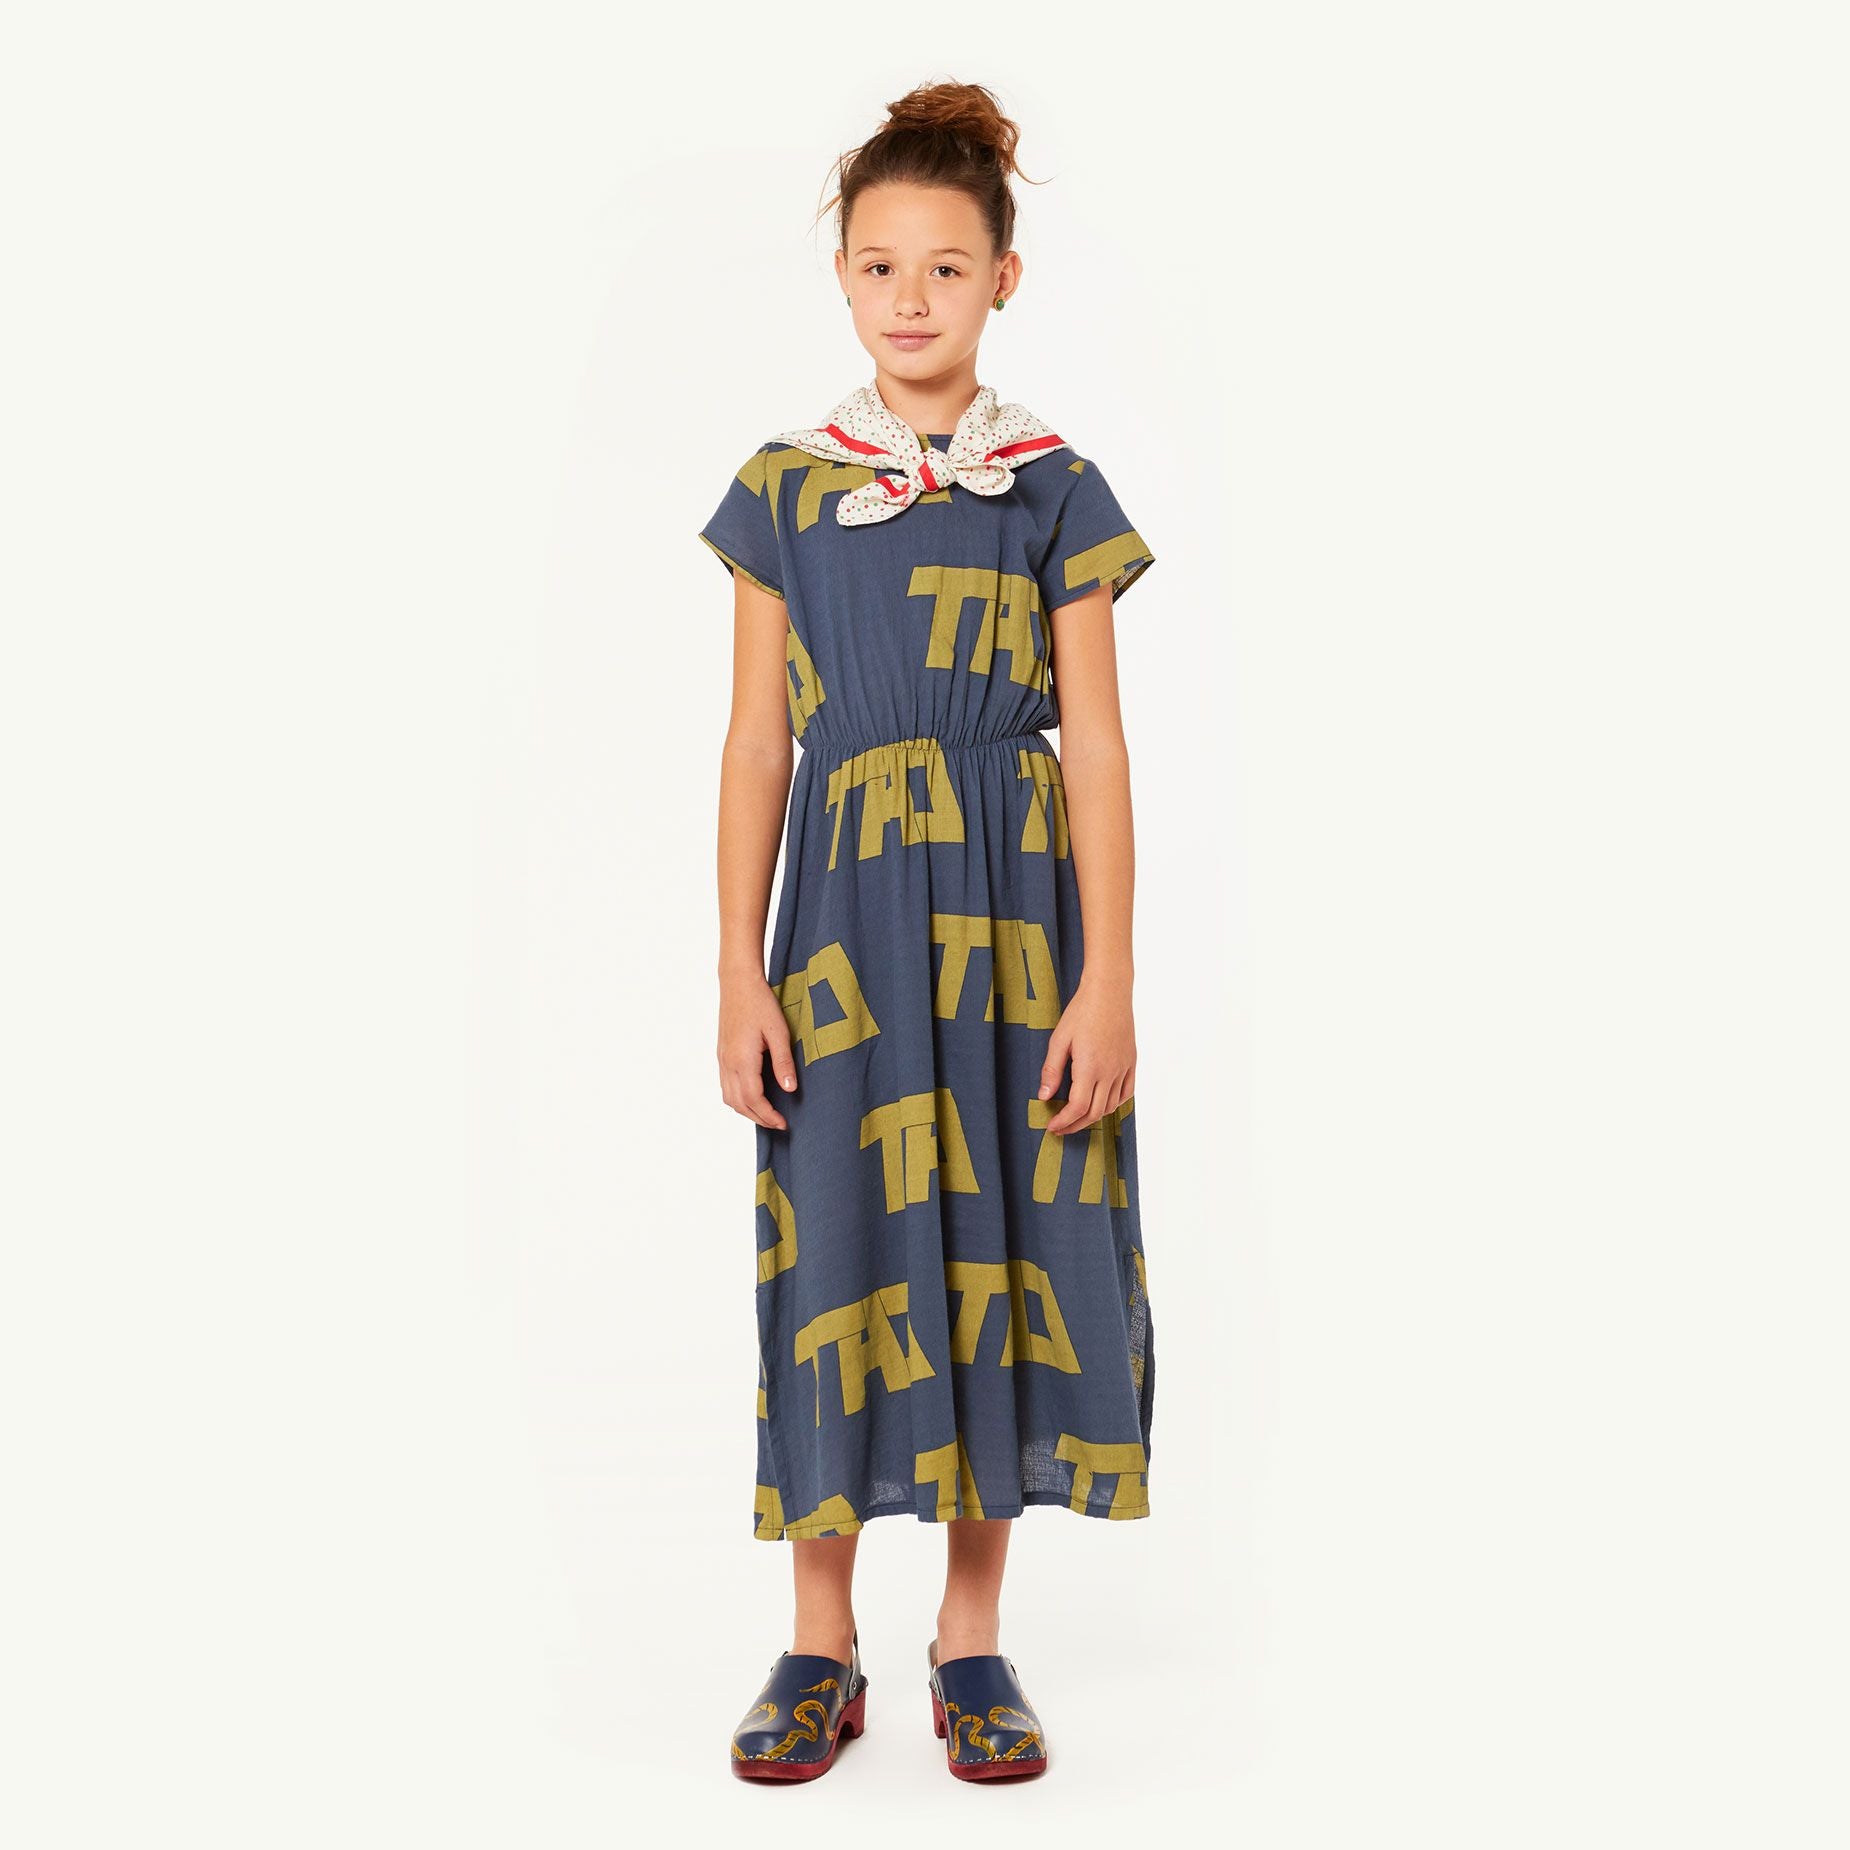 MARTEN KIDS DRESS, BLUE TAO - Cemarose Children's Fashion Boutique